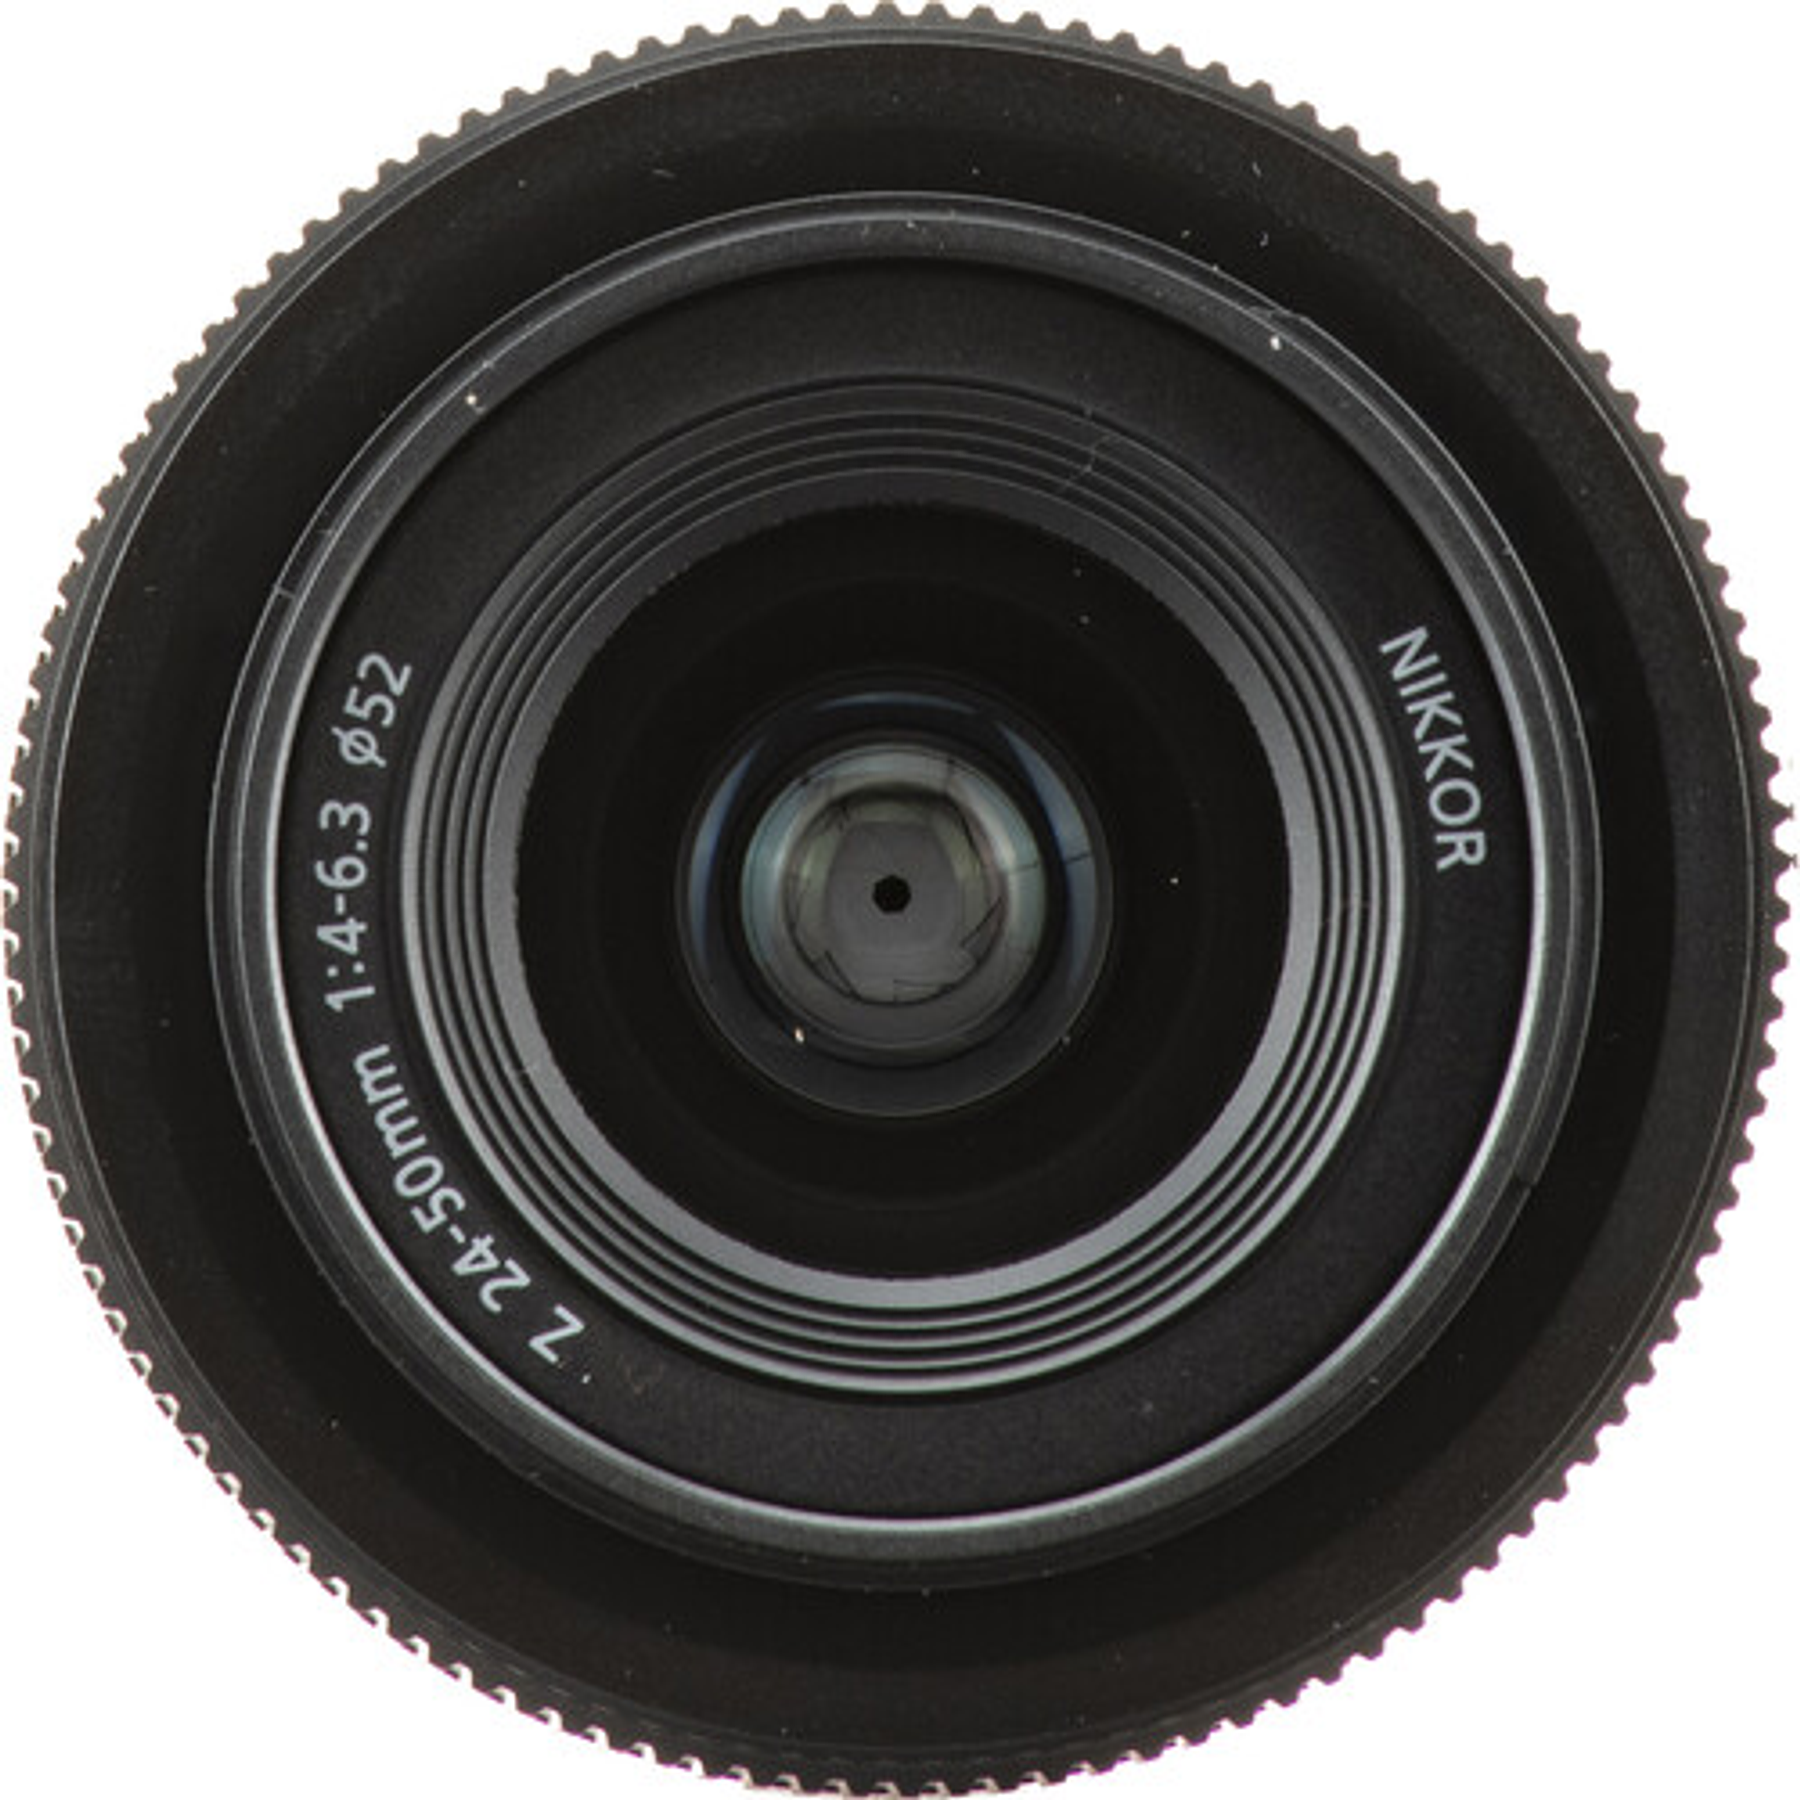 Nikon NIKKOR Z 24-50mm f/4-6.3